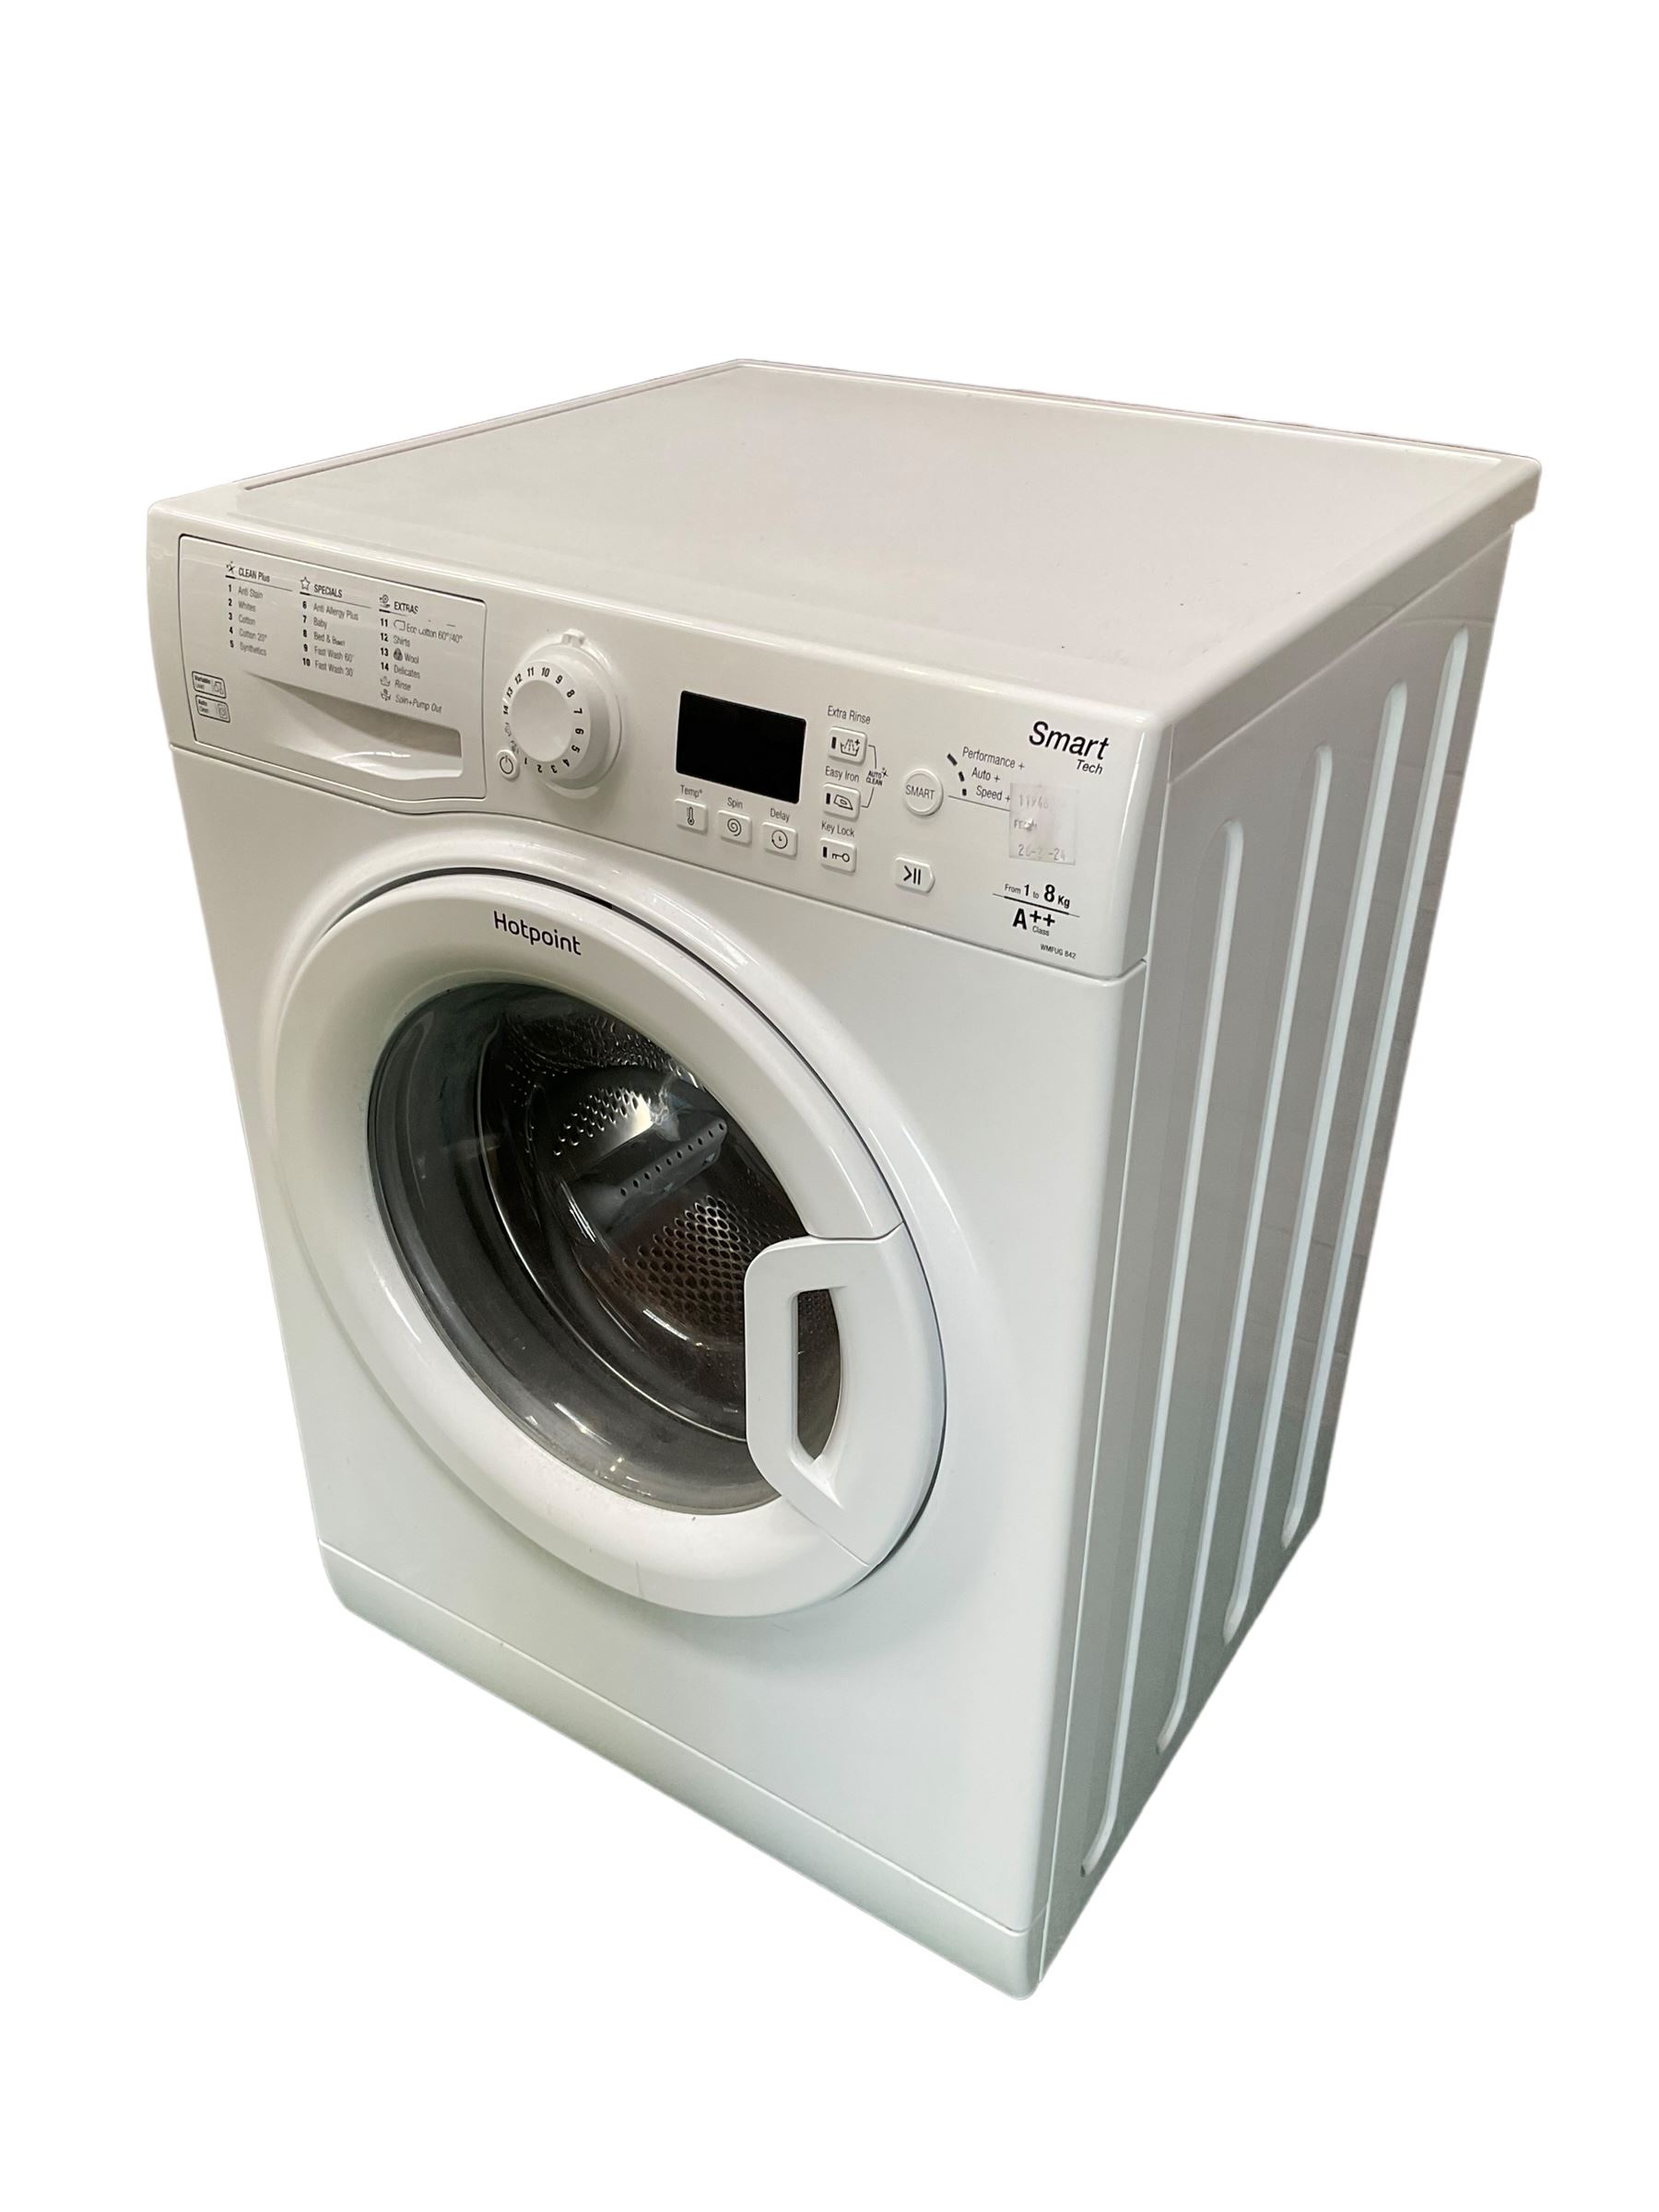 Hotpoint 8kg washing machine in white - Bild 3 aus 3